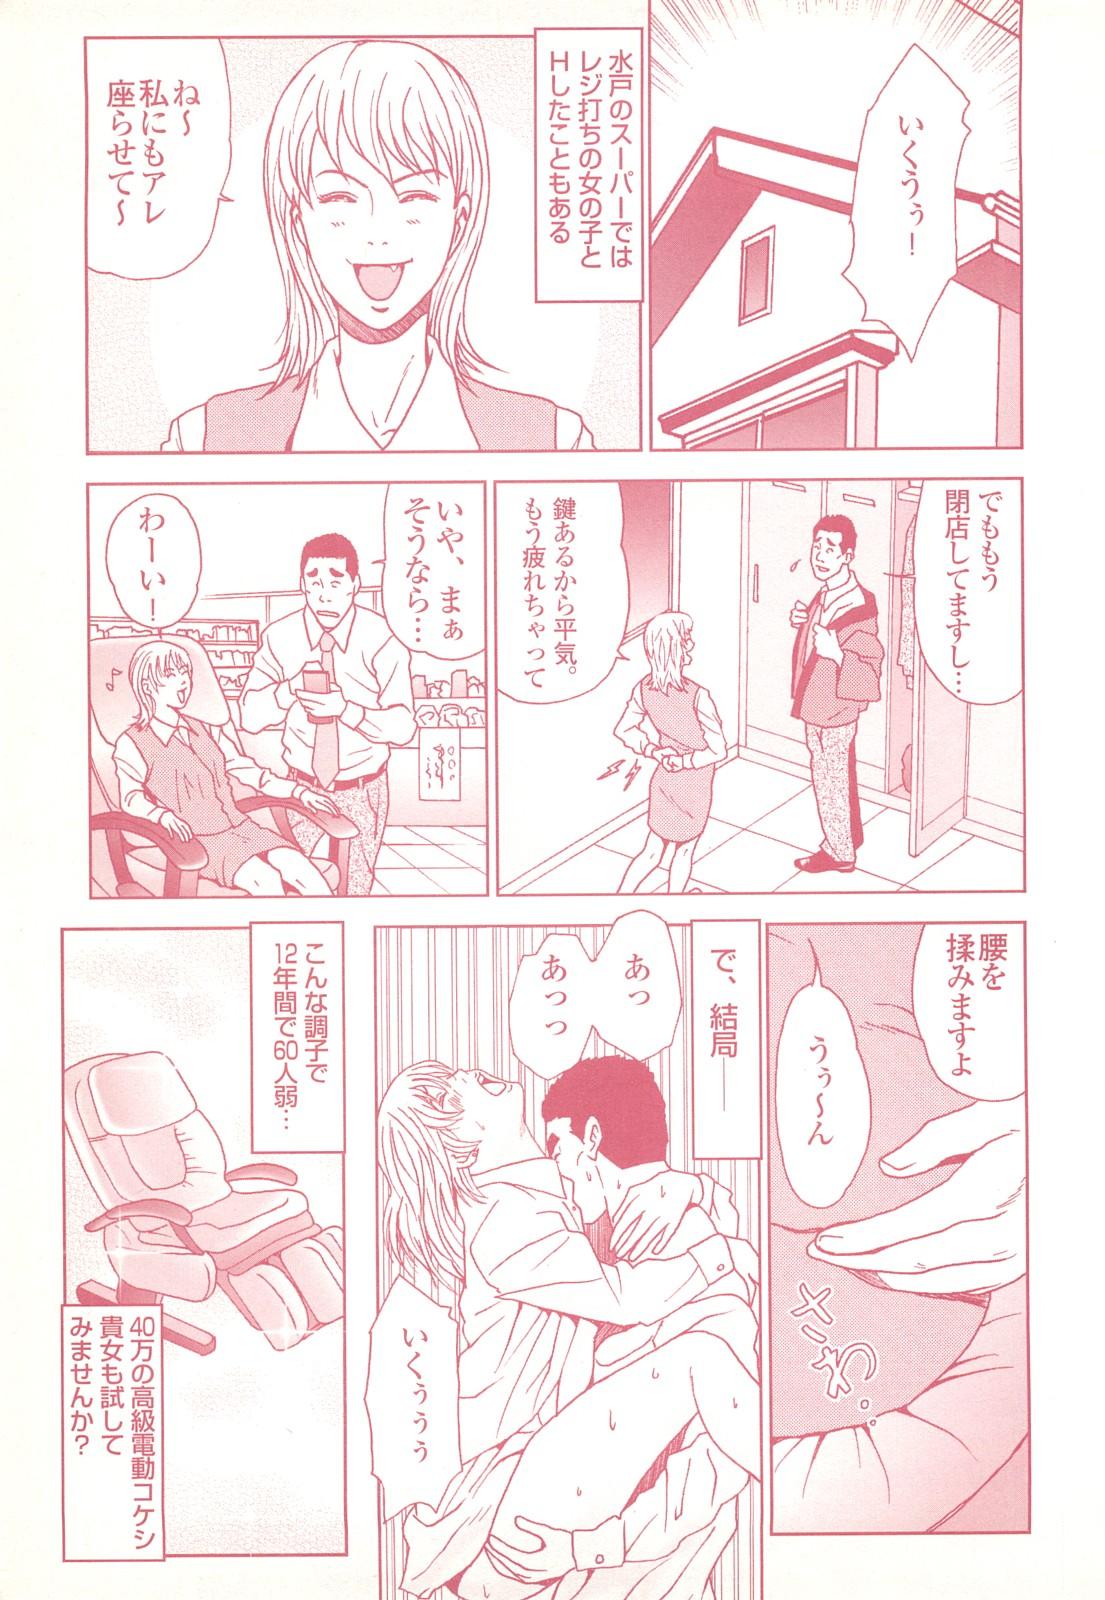 コミック裏モノJAPAN Vol.18 今井のりたつスペシャル号 90